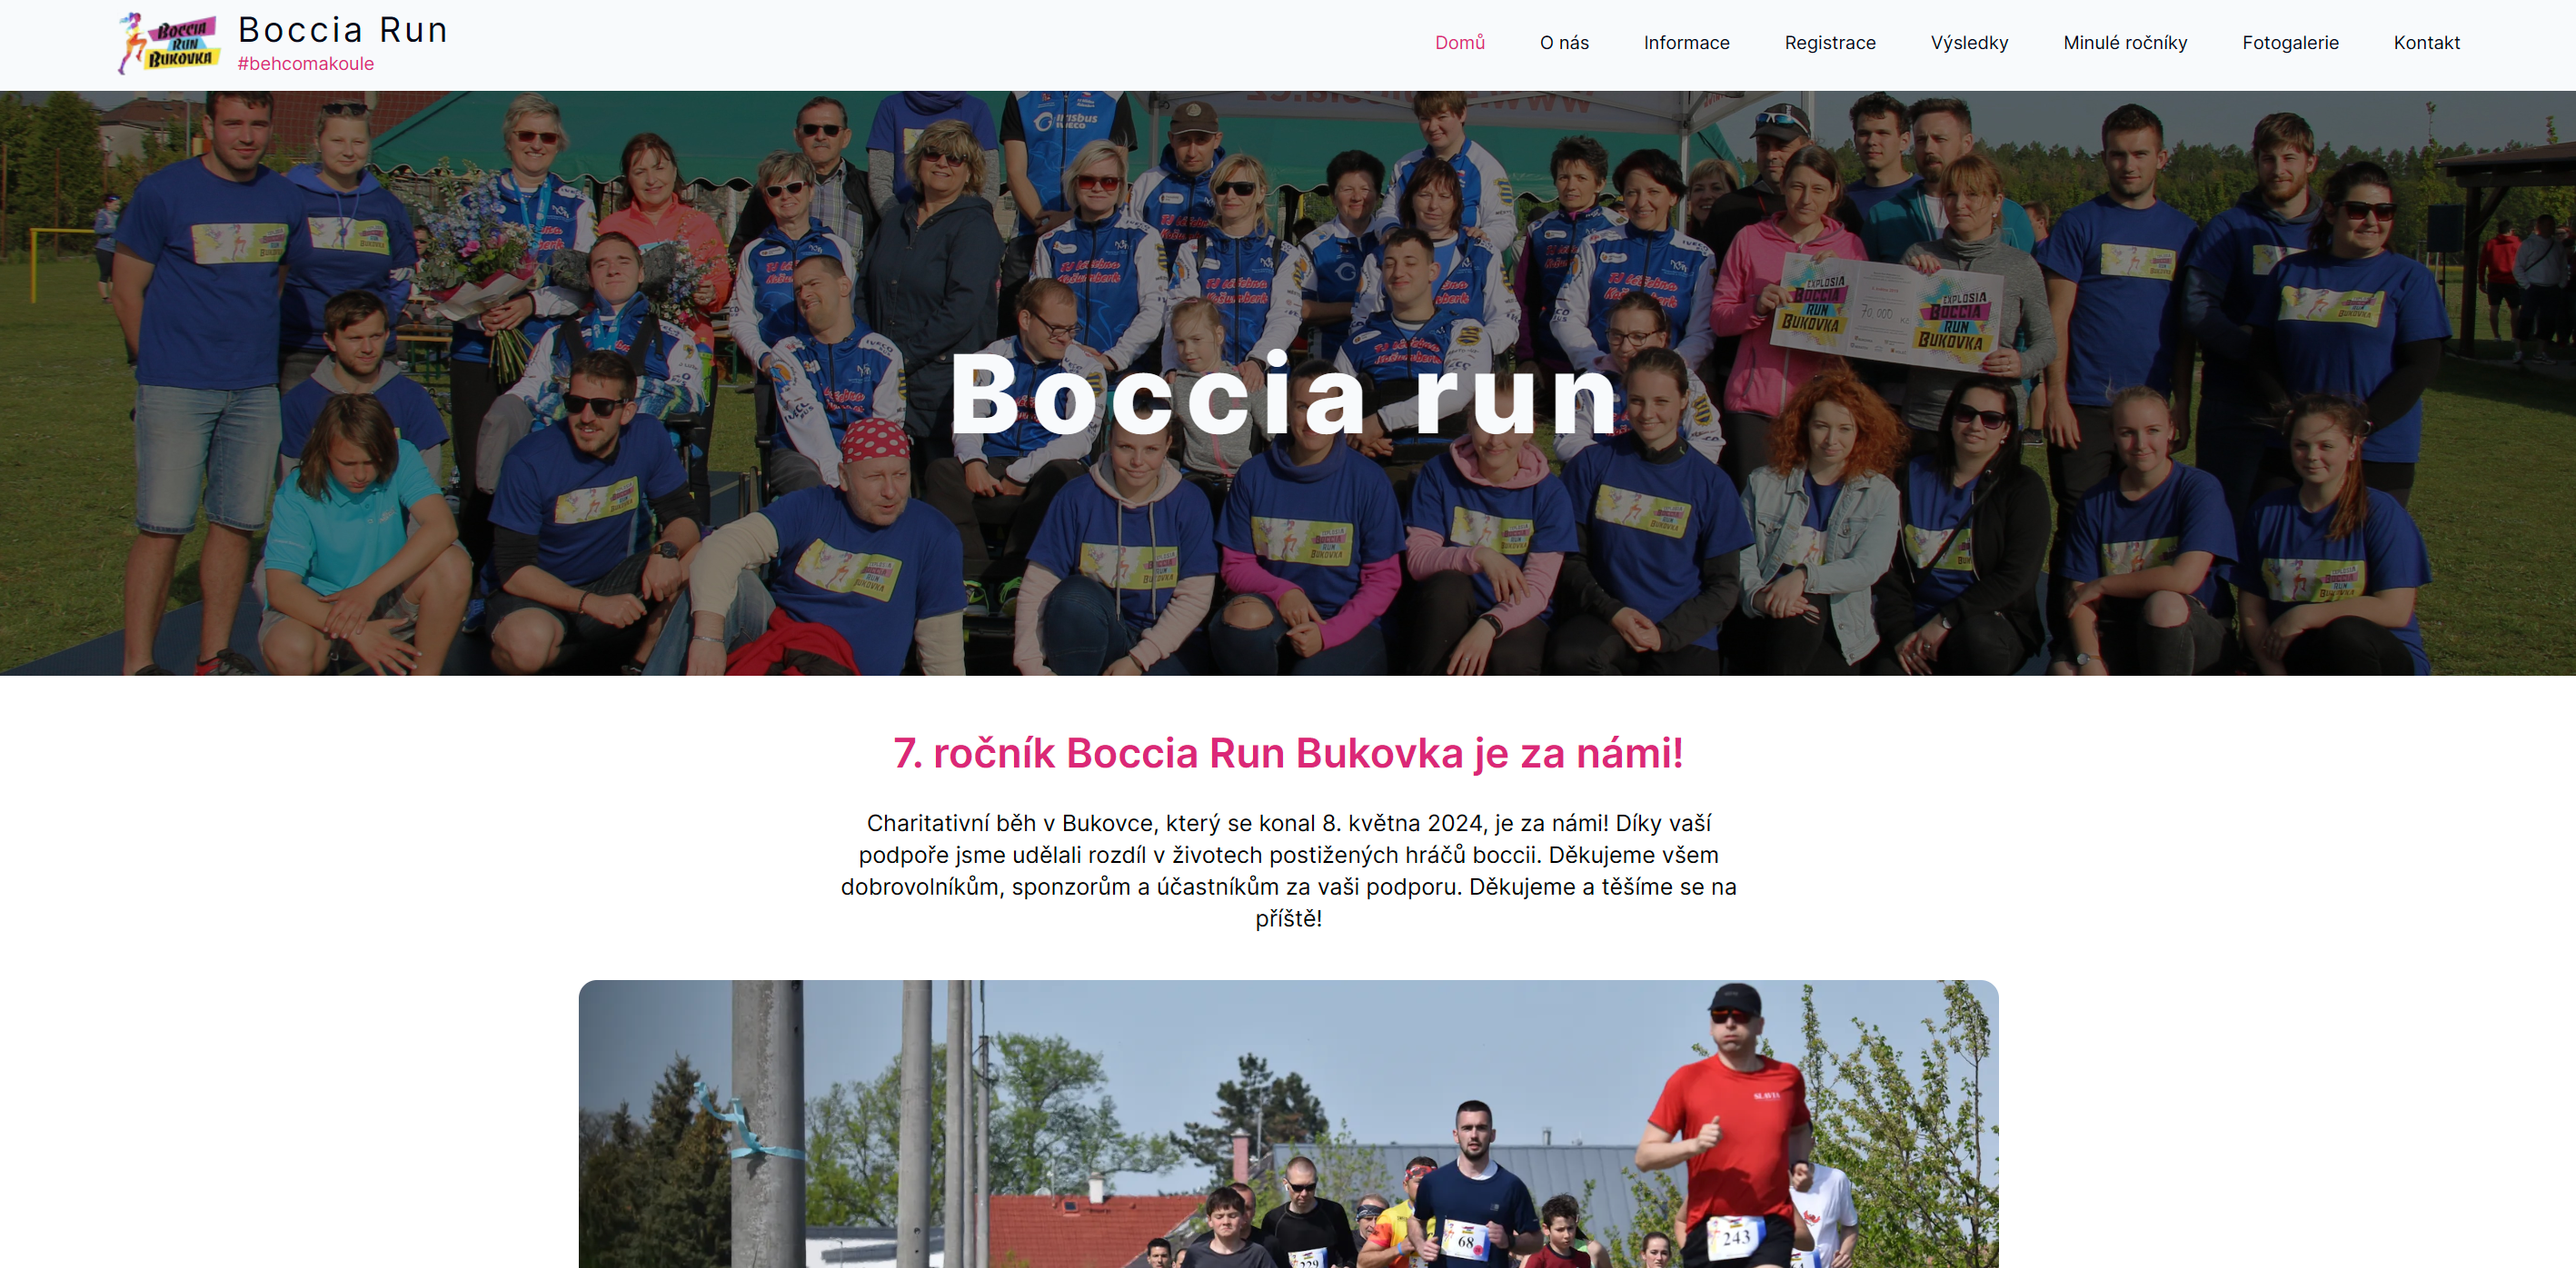 Boccia Run Image